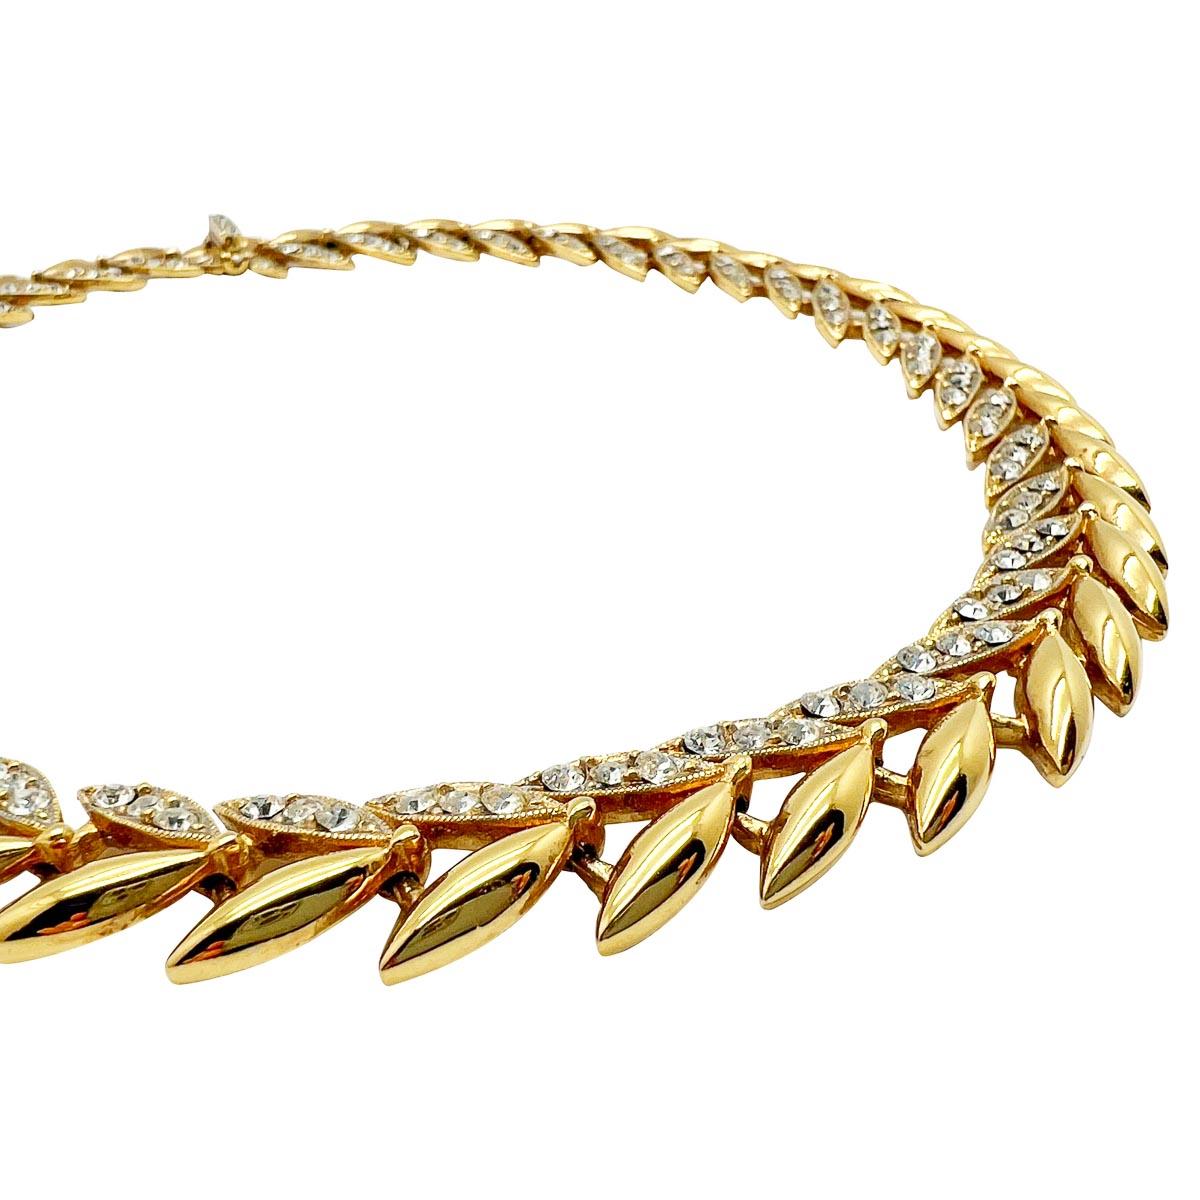 Un collier vintage en cristal avec des feuilles, réalisé par le bijoutier londonien SARDI. Un design doré stylisé, rehaussé de cristaux, offre un style contemporain avec une touche scintillante.
Votre boîte à bijoux est à portée de main, tout comme